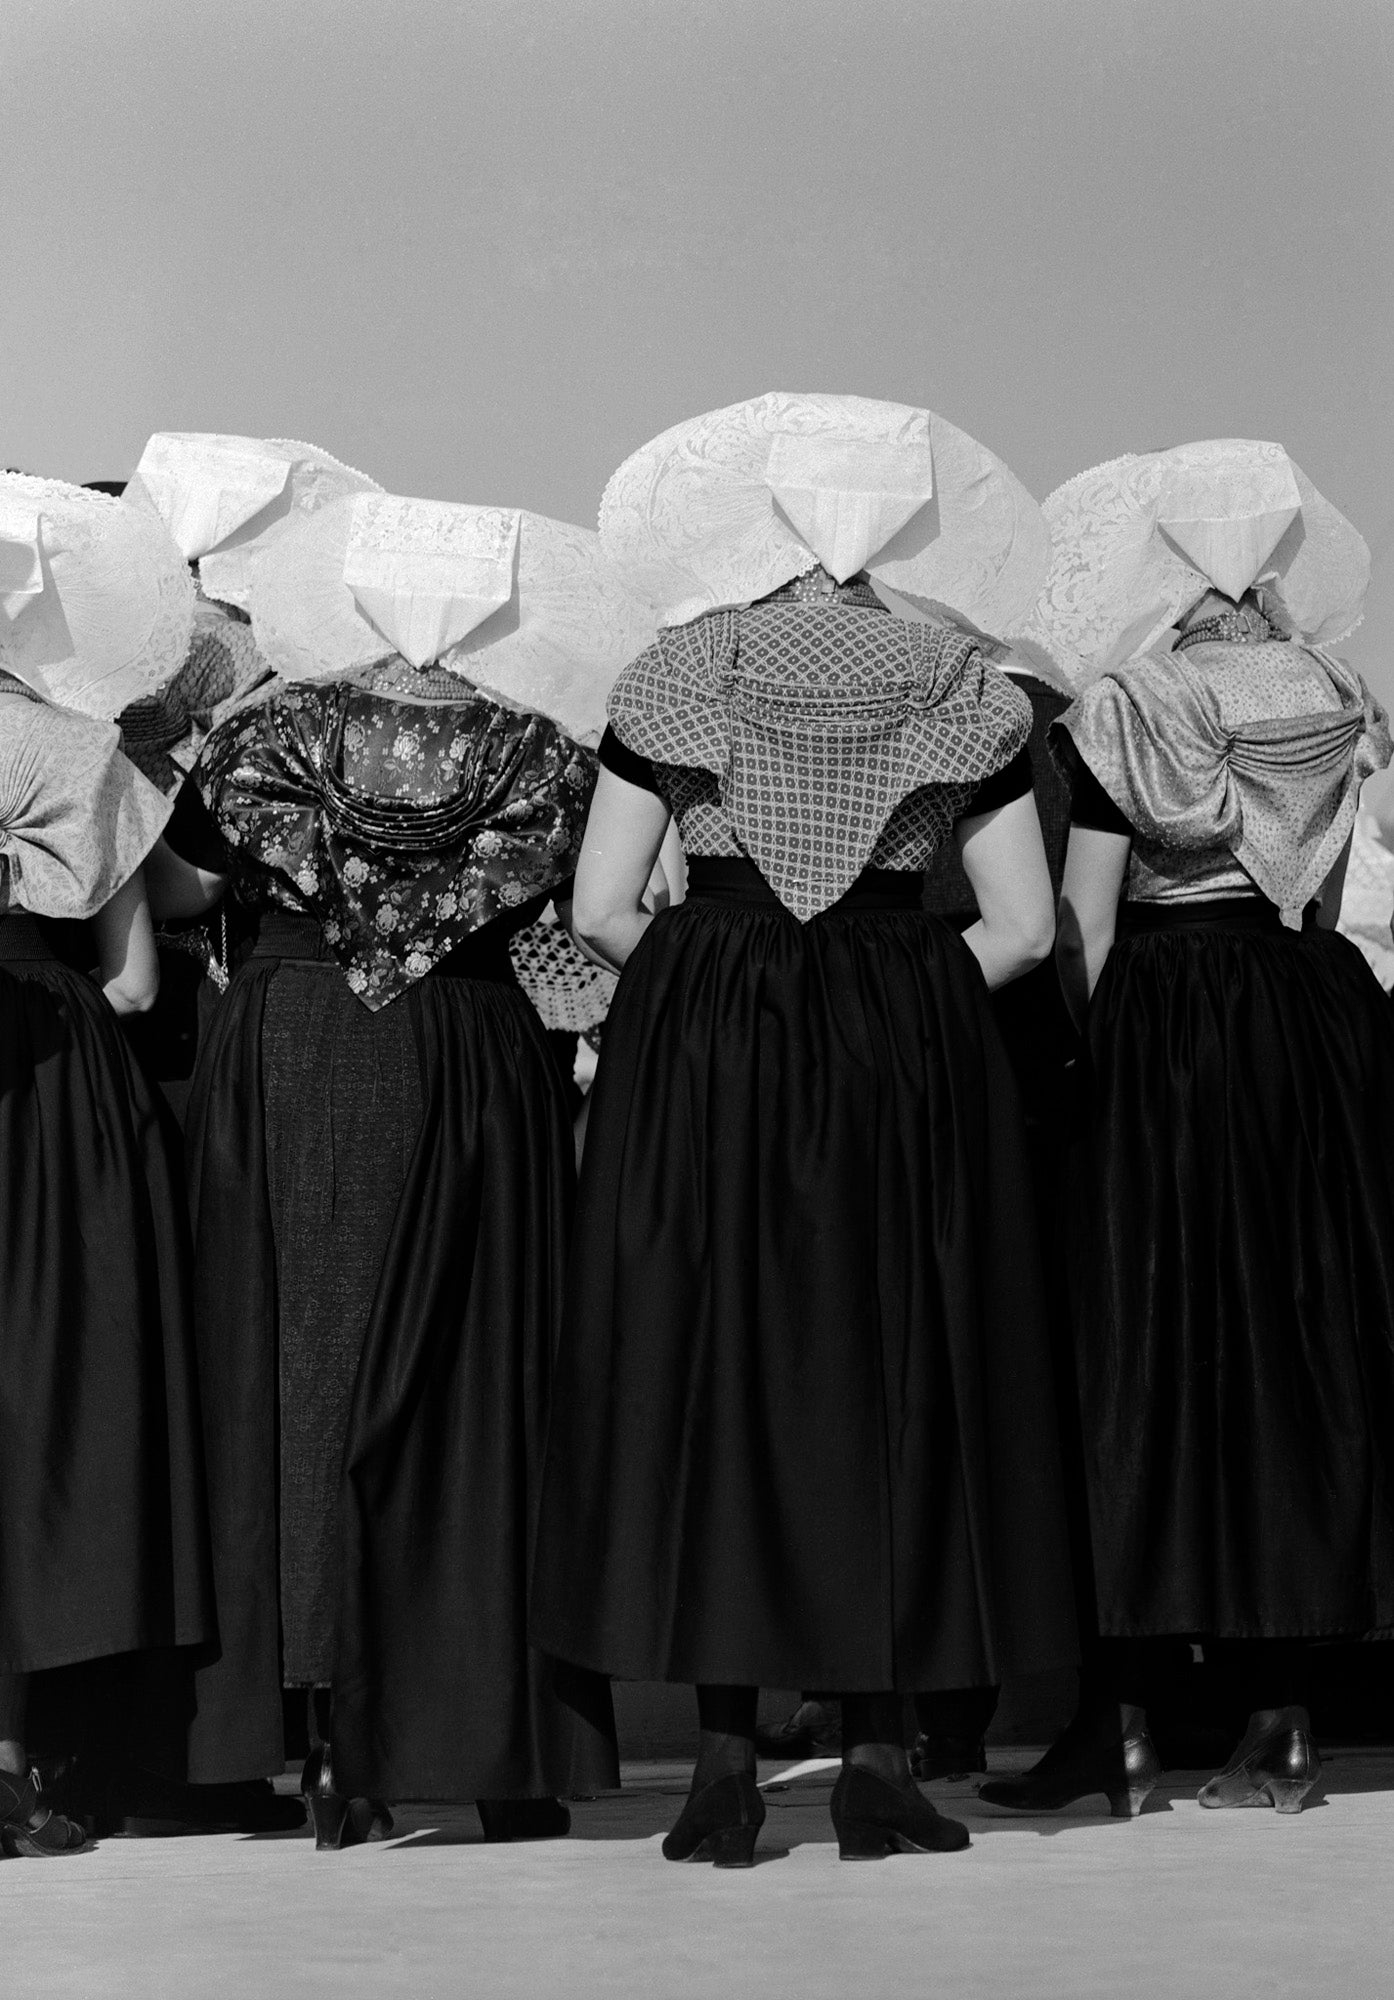 Vrouwen met protestantse klederdracht, Cas Oorthuys